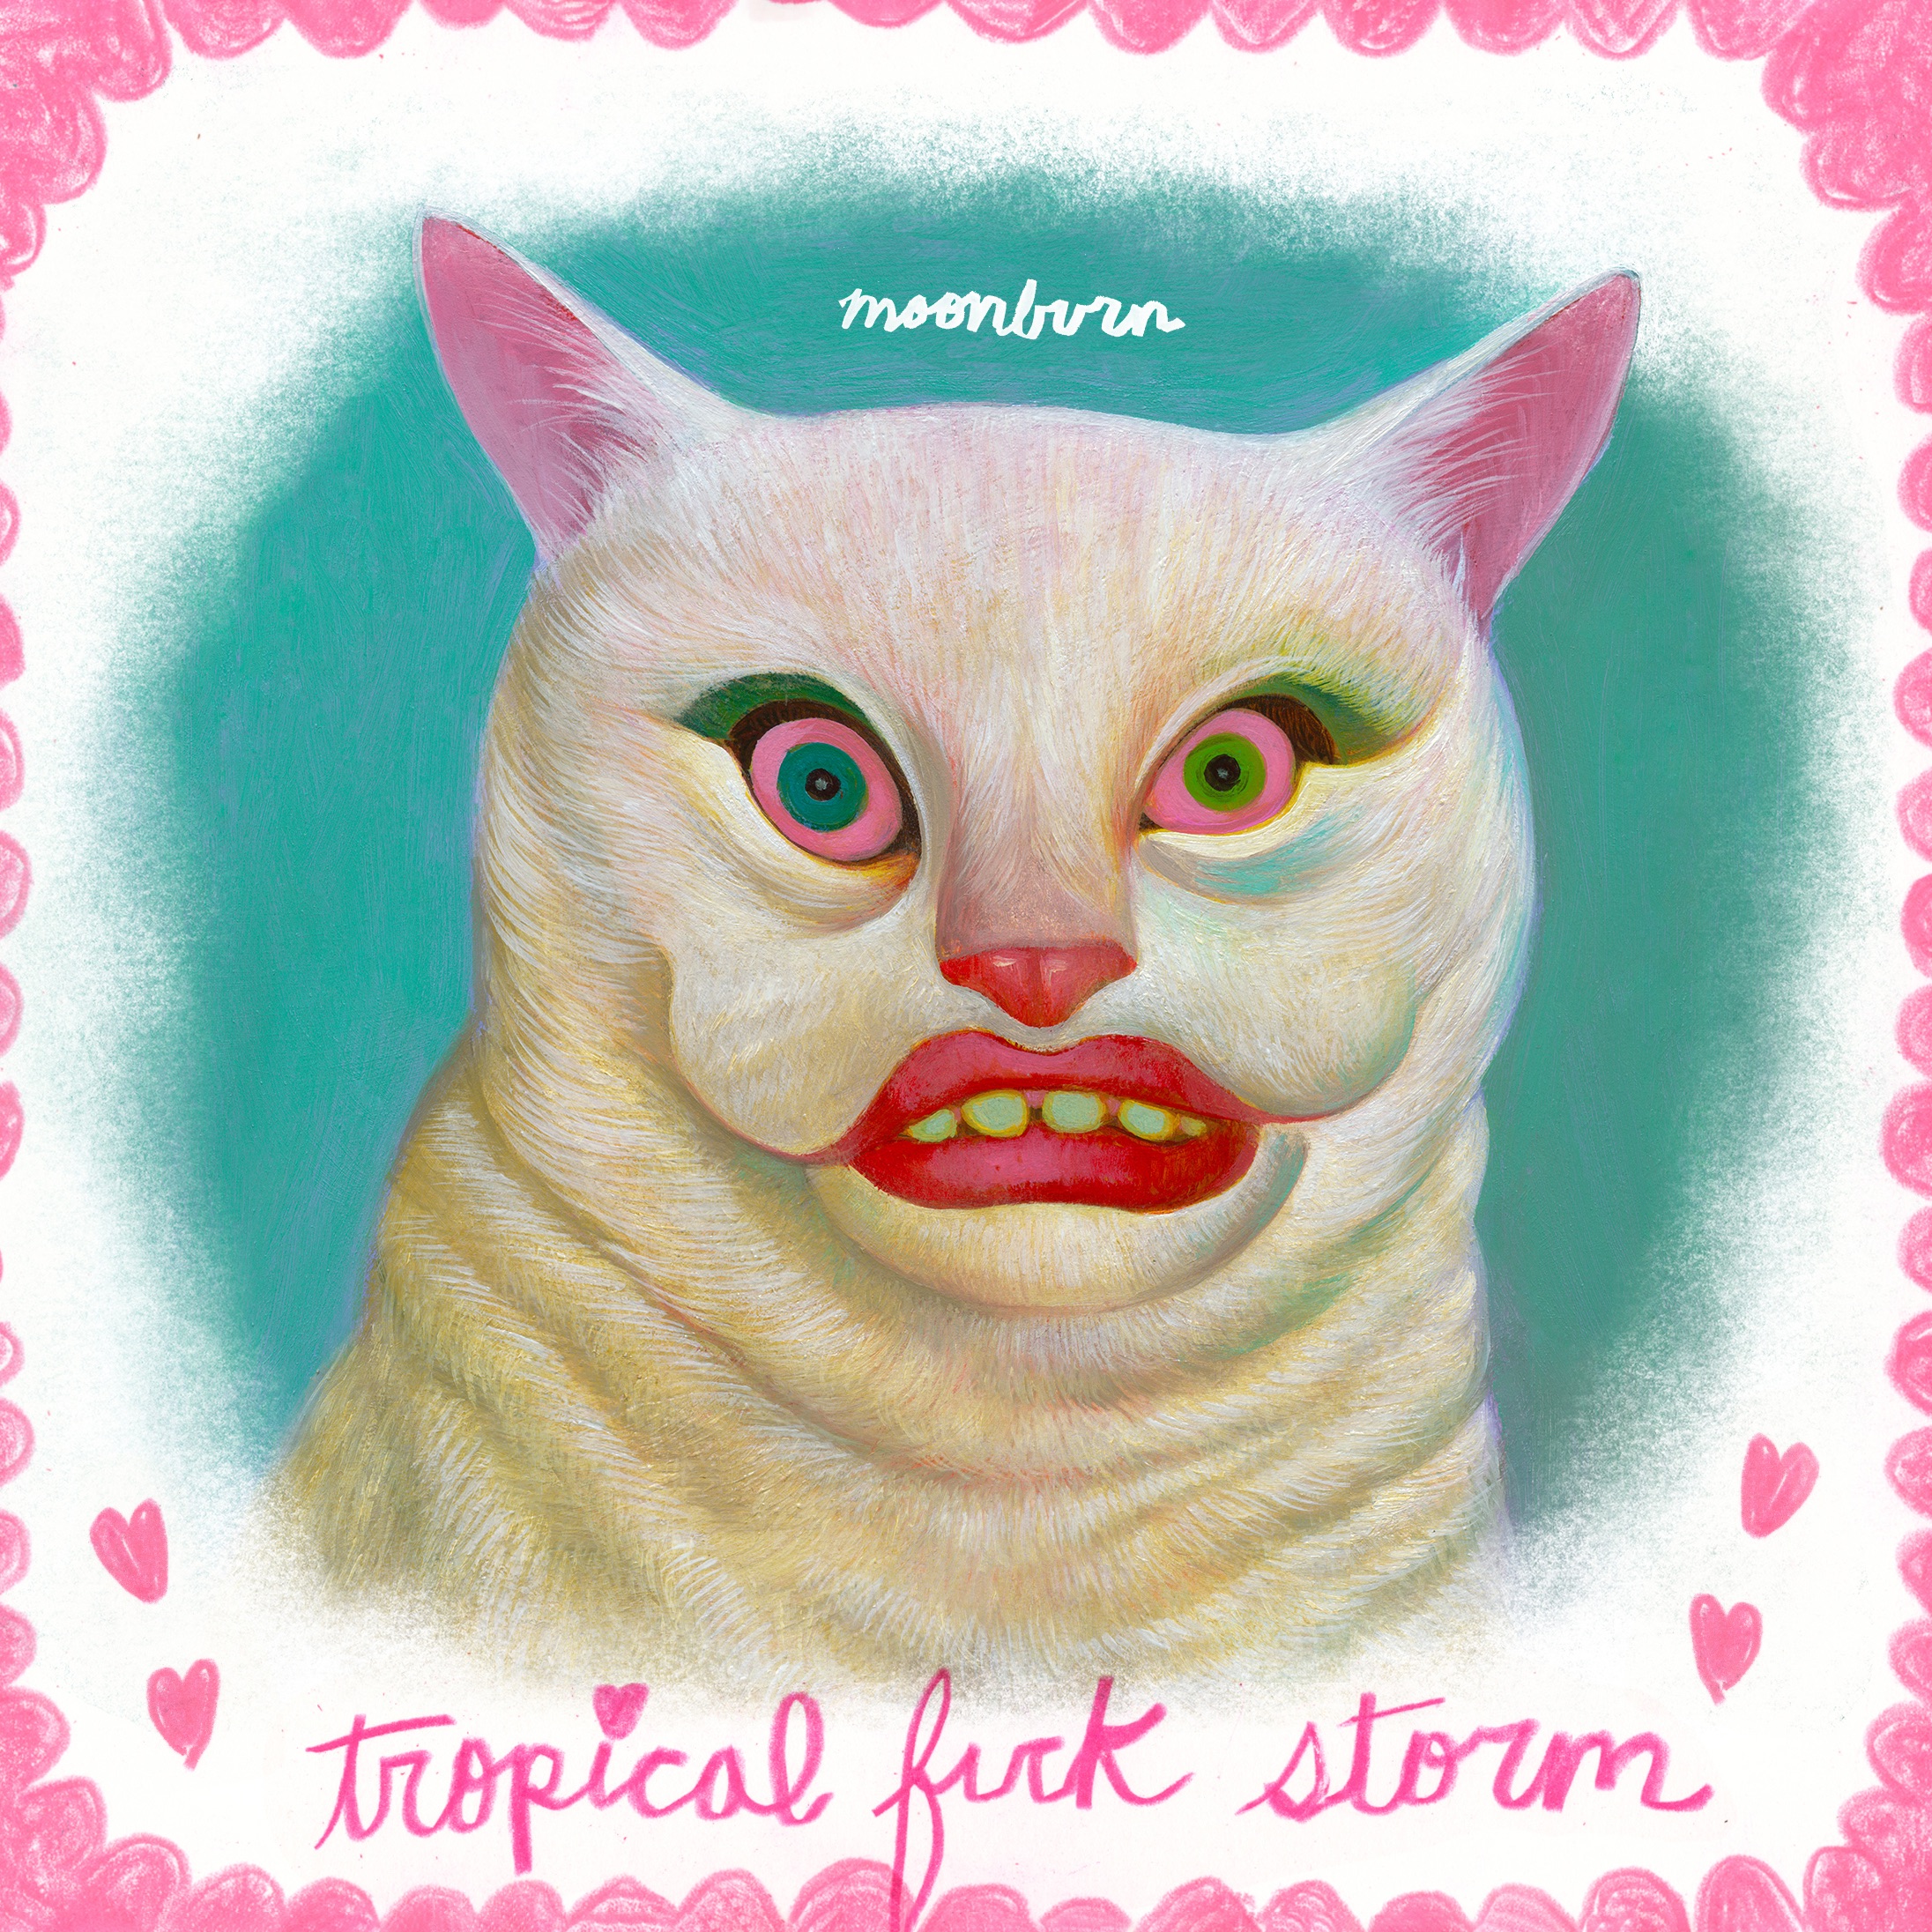 Tropical Fuck Storm Moonburn cover artwork